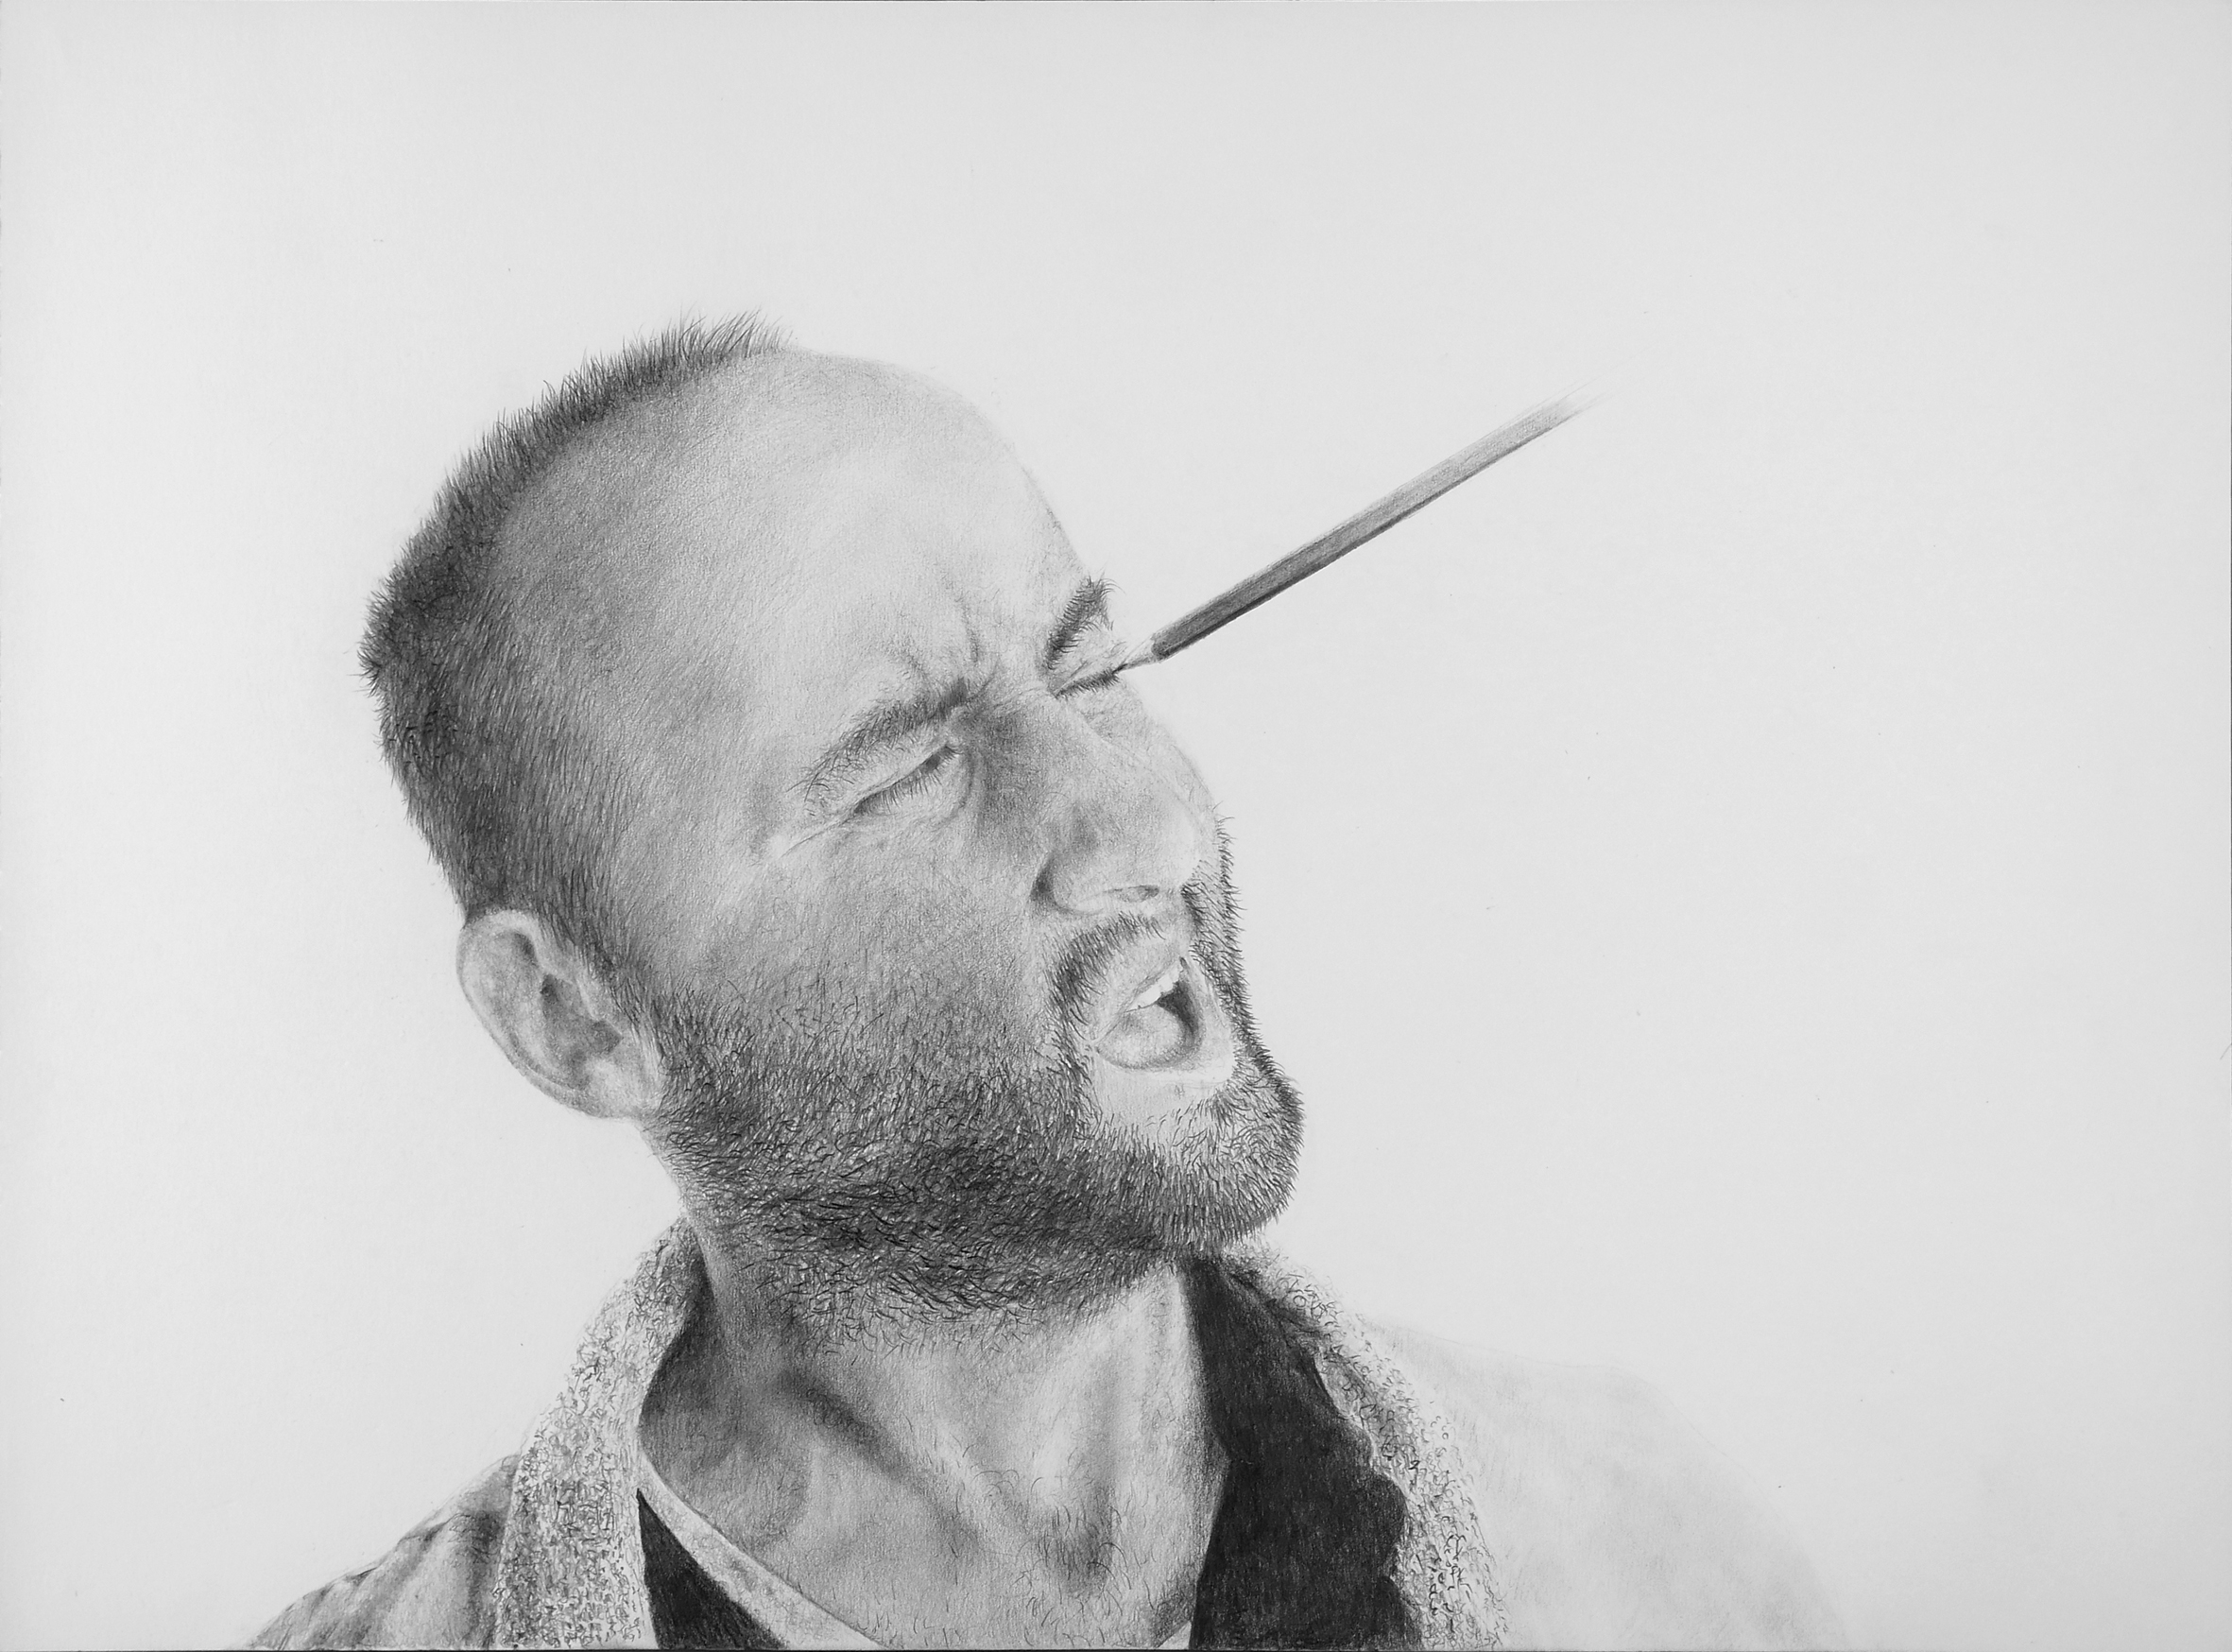 Massimiliano Galliani, “autoritratto E matita” 2016
matita su carta, cm 42 x 60